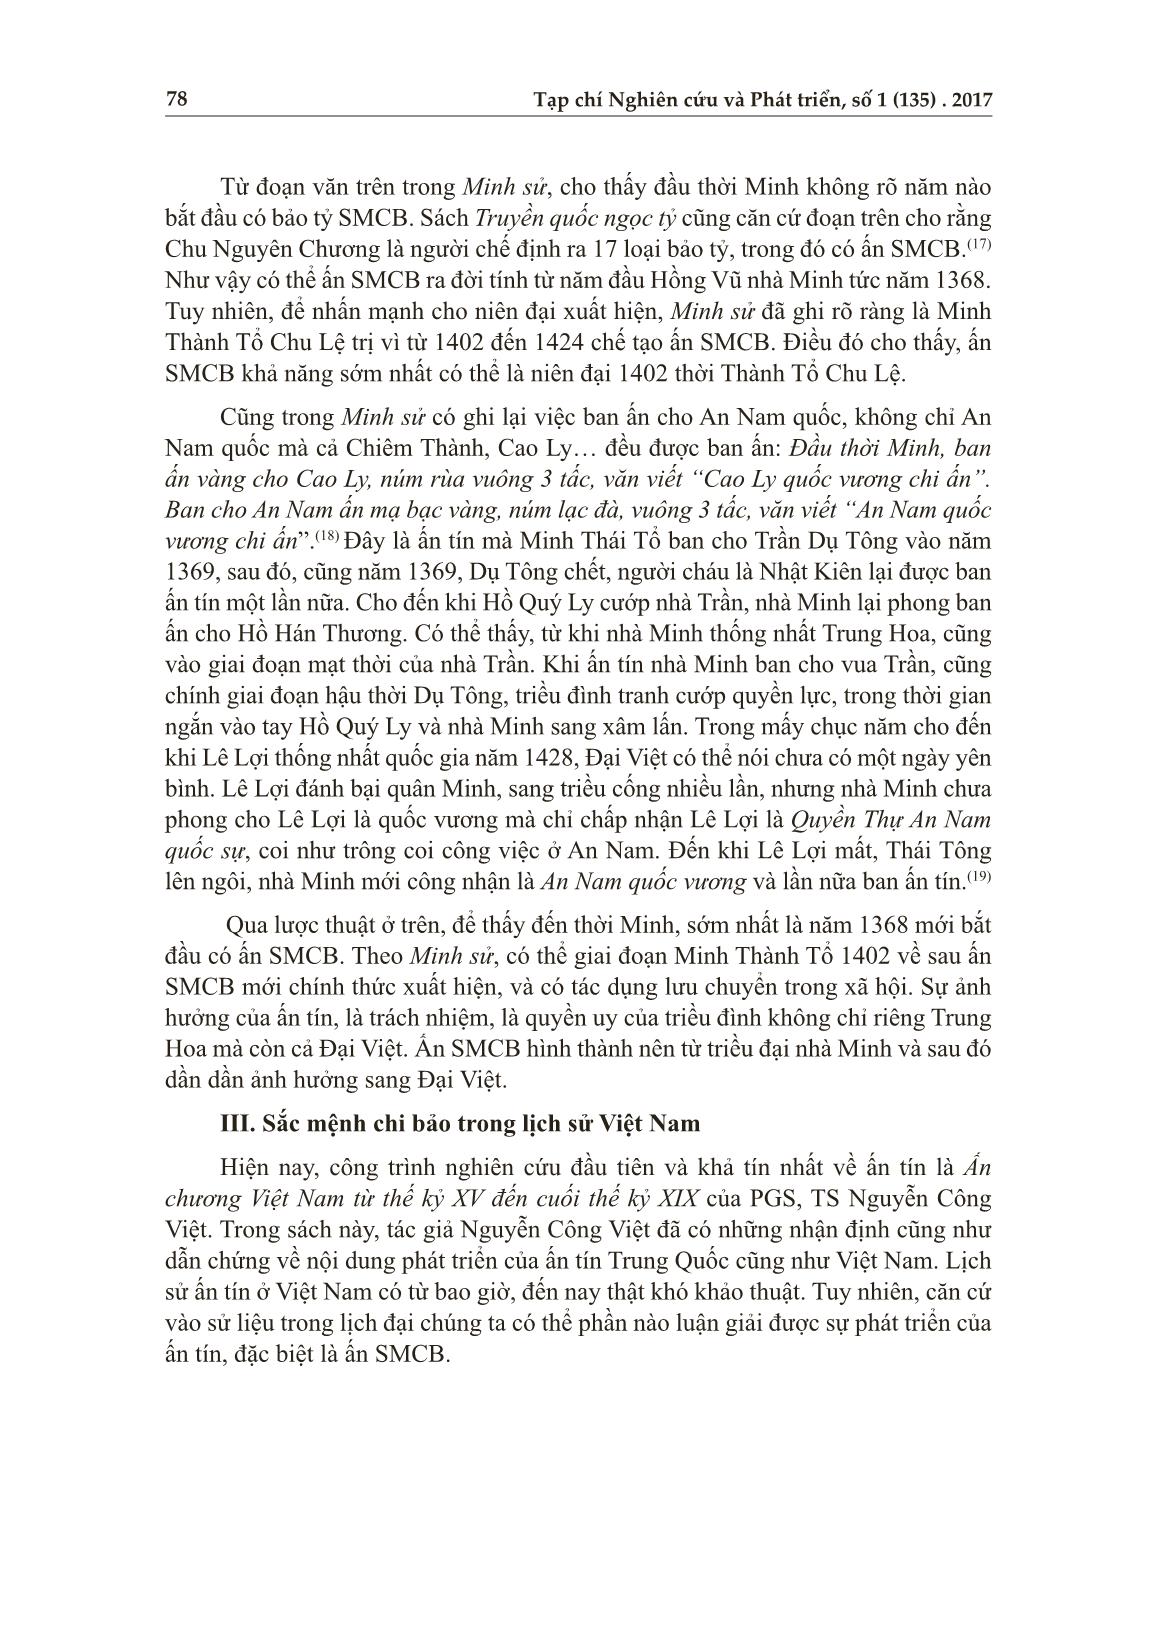 Ấn “sắc mệnh chi bảo” ở Hoàng thành Thăng Long và trào lưu phát ấn đương đại trang 5